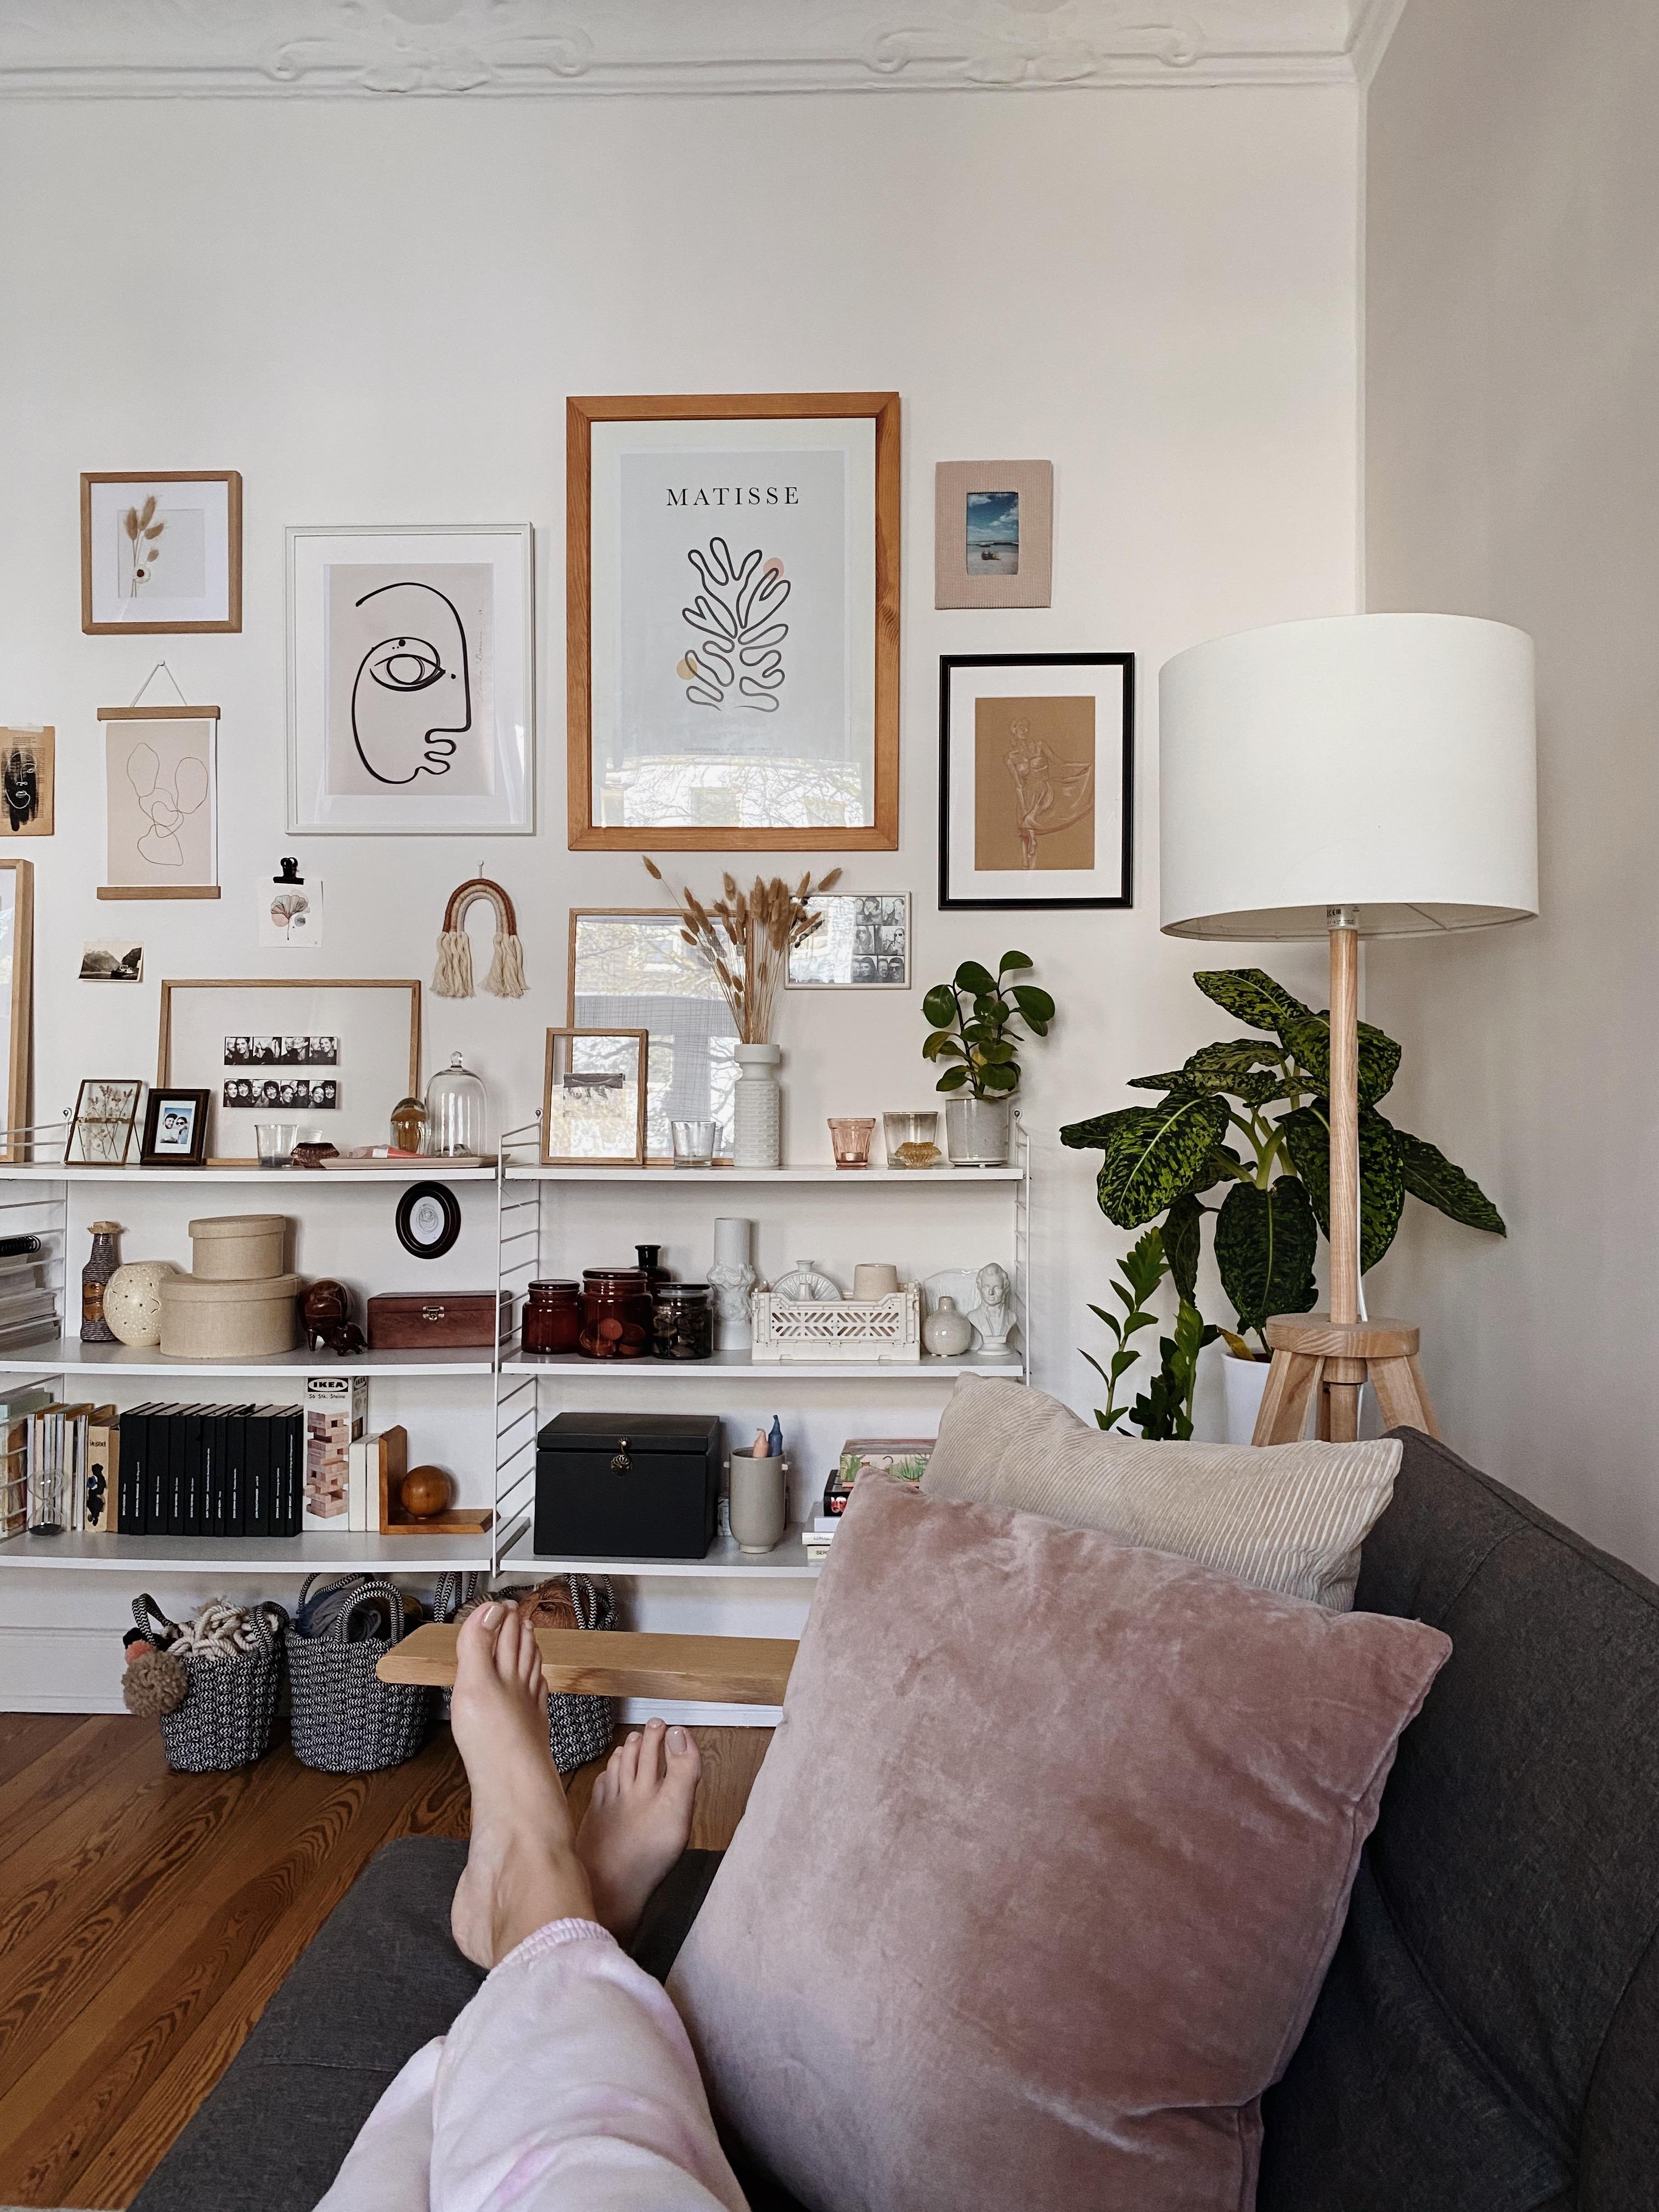 An grauen Sonntagen: Couch lesen auf der Couch & neue Interior-Inspirationen finden! #interior #solebich #mylivingroom 